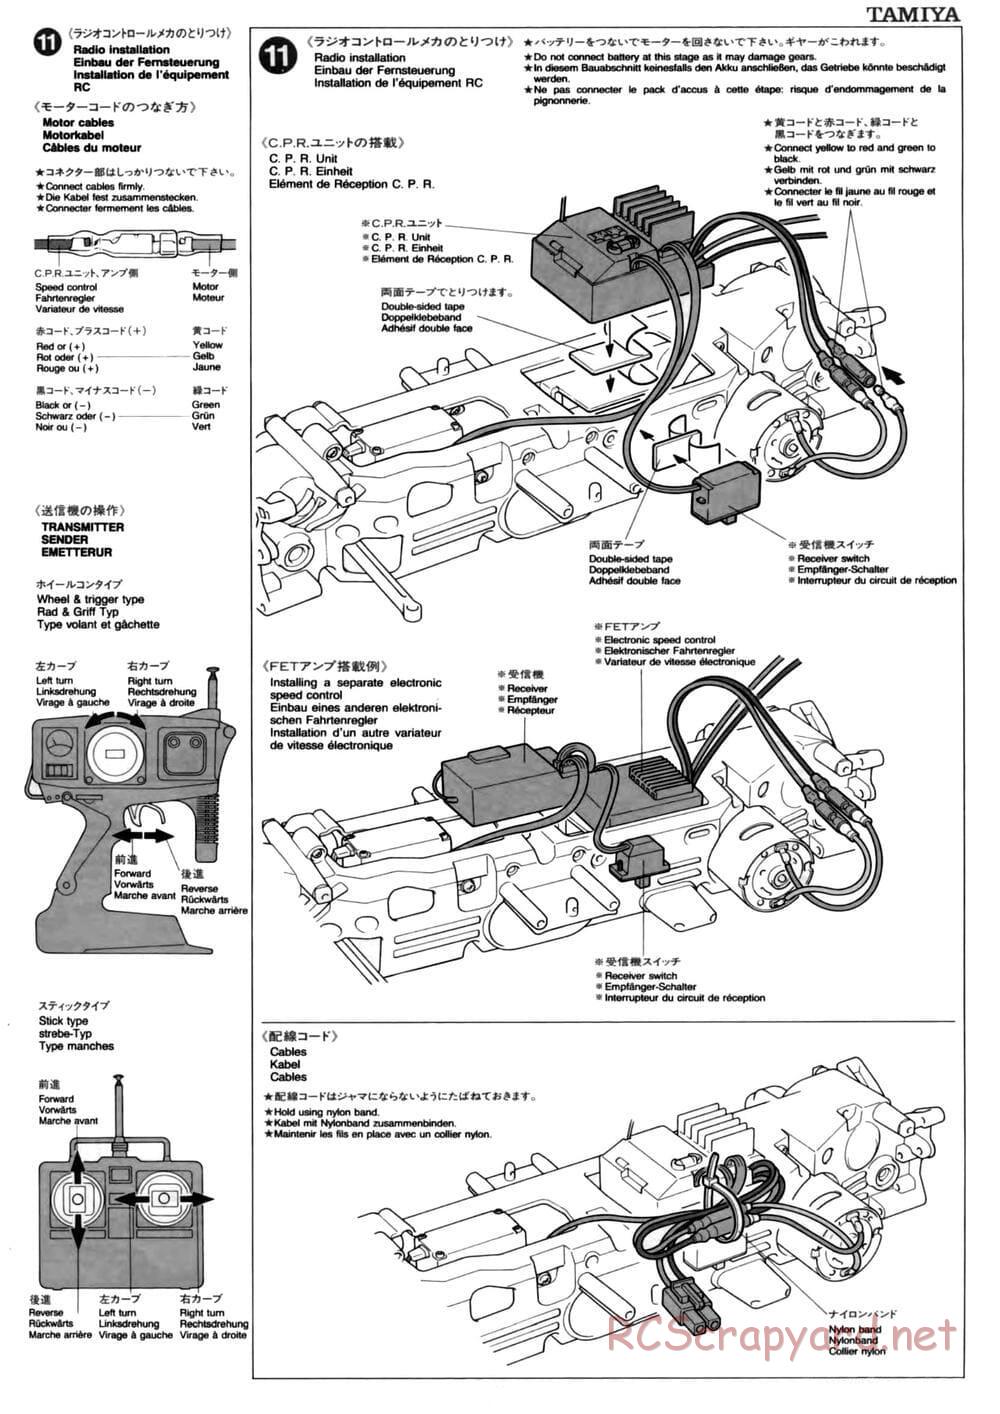 Tamiya - TL-01 Chassis - Manual - Page 9